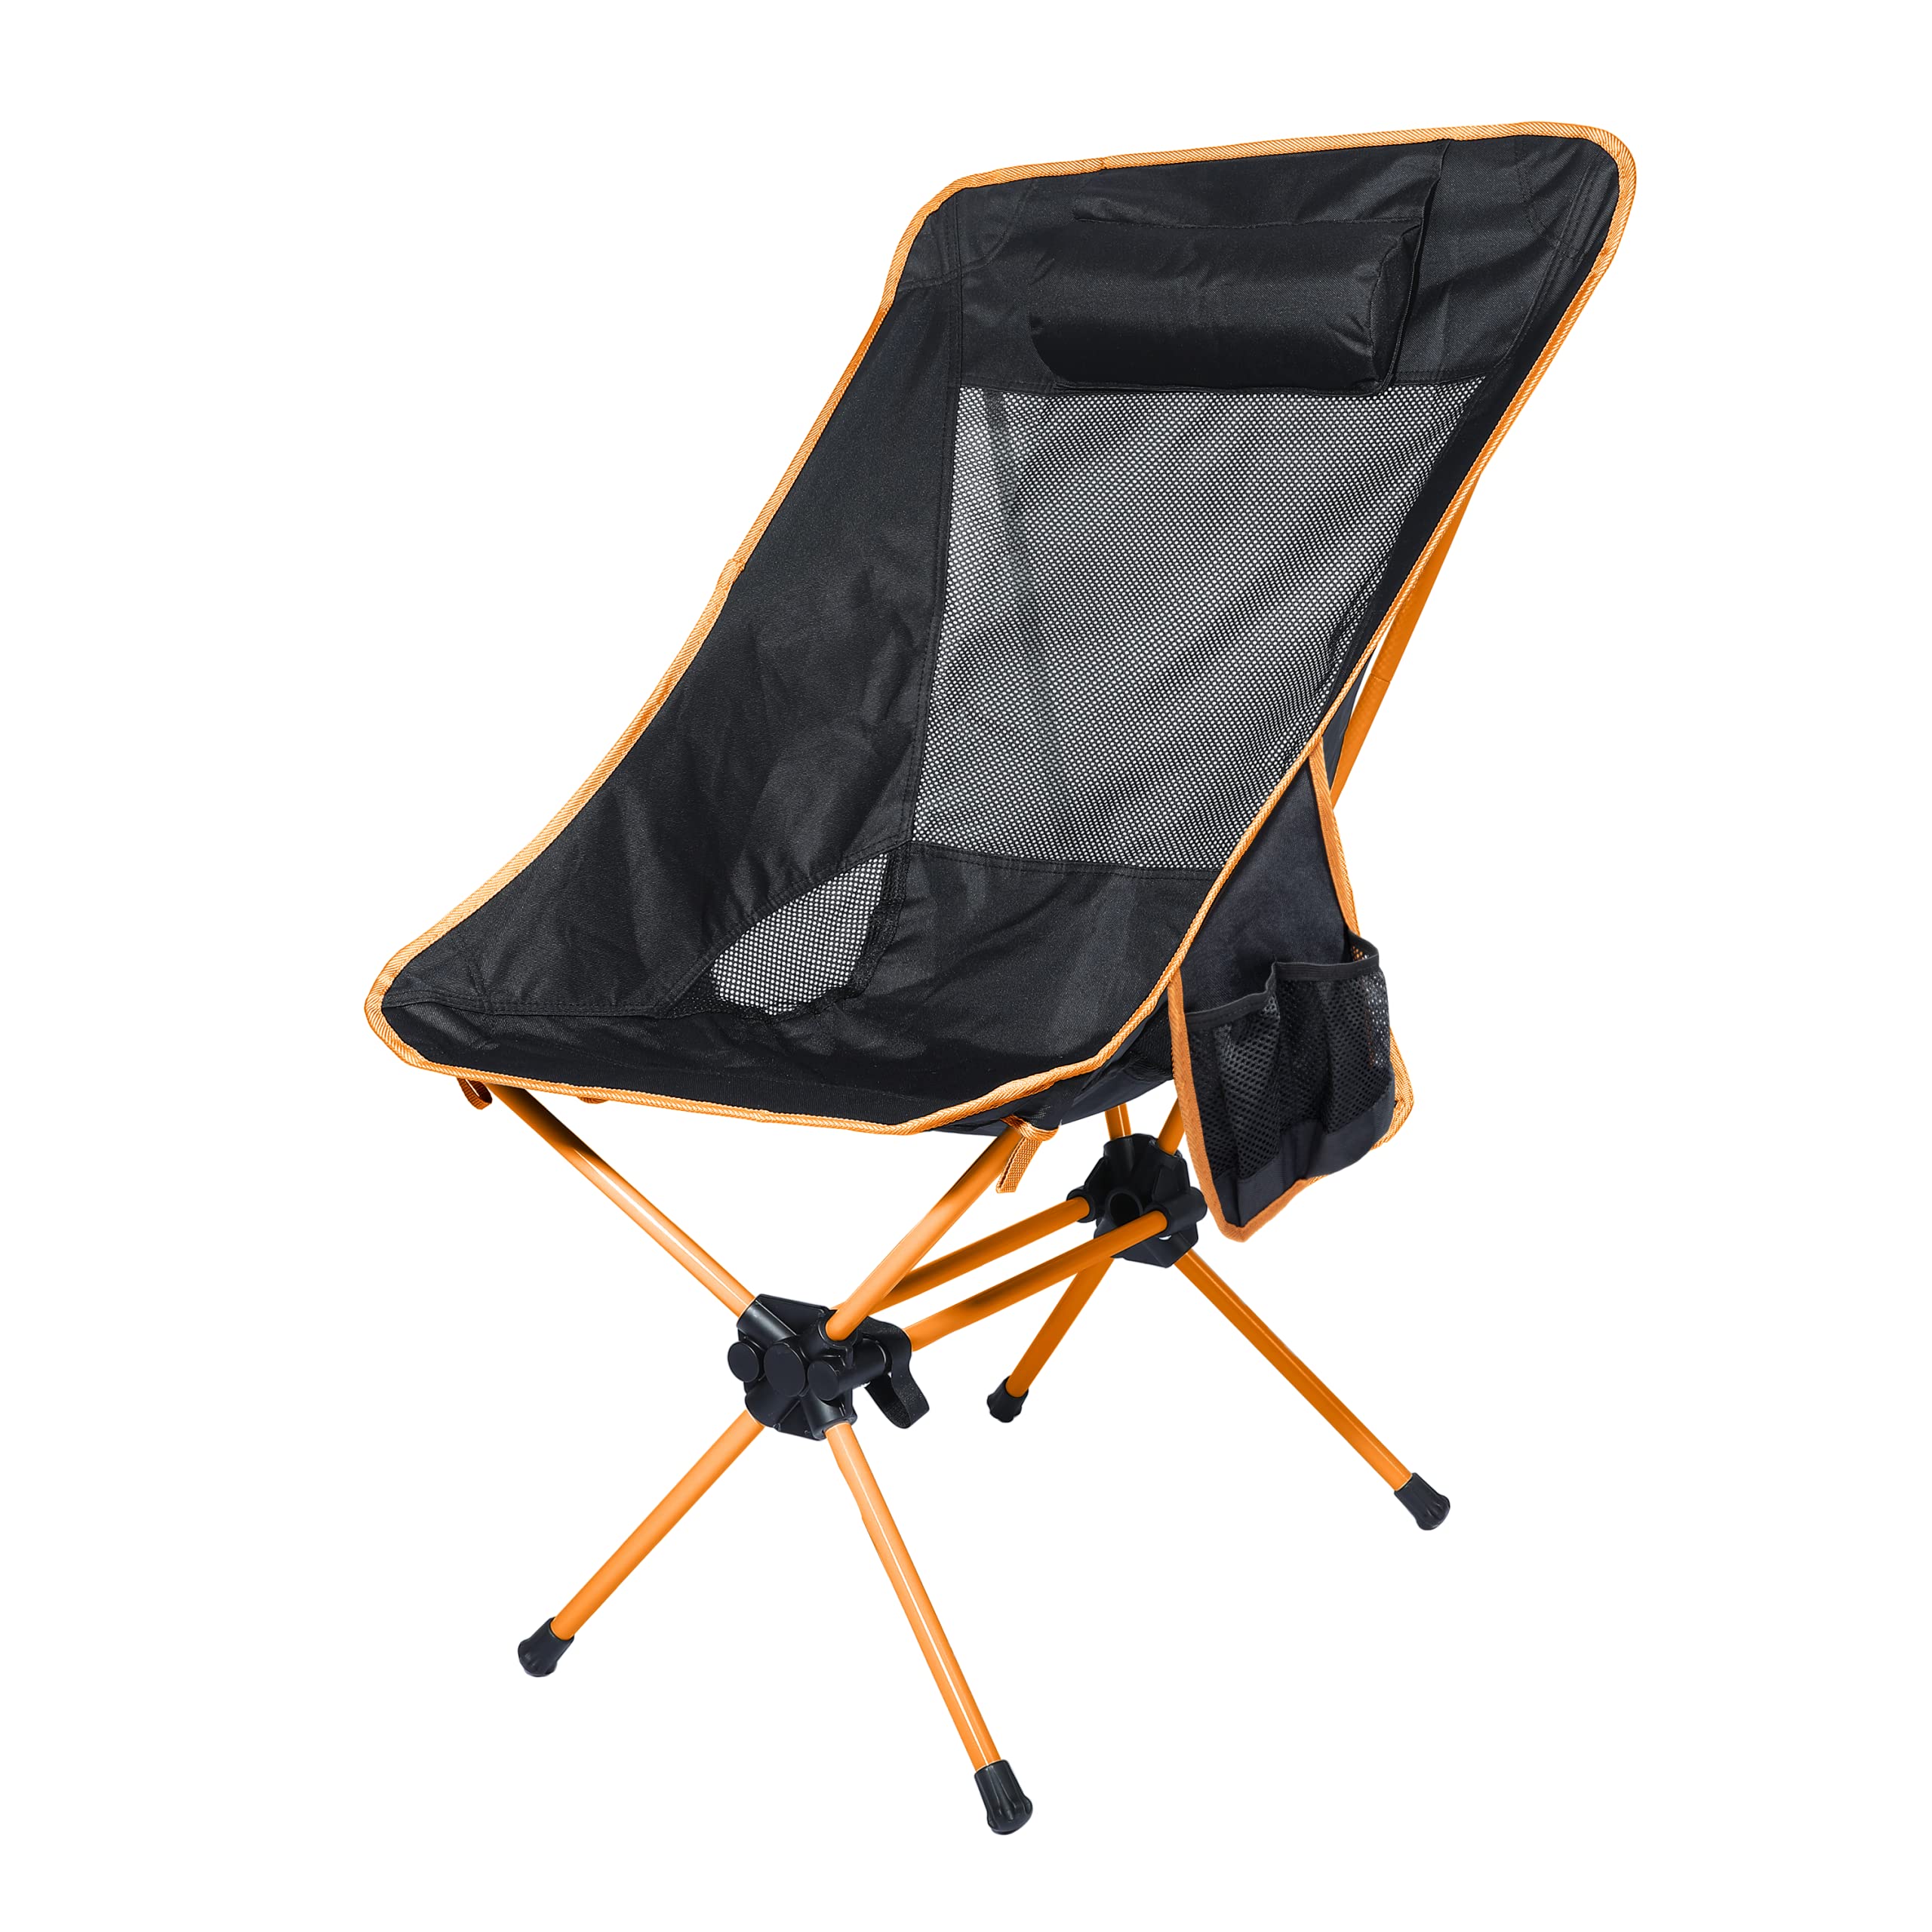 送料無料Ubon Compact Folding High Back Camping Chair Lightweight Portable Backpacking Chairs with 2 Side Pockets BlackOr